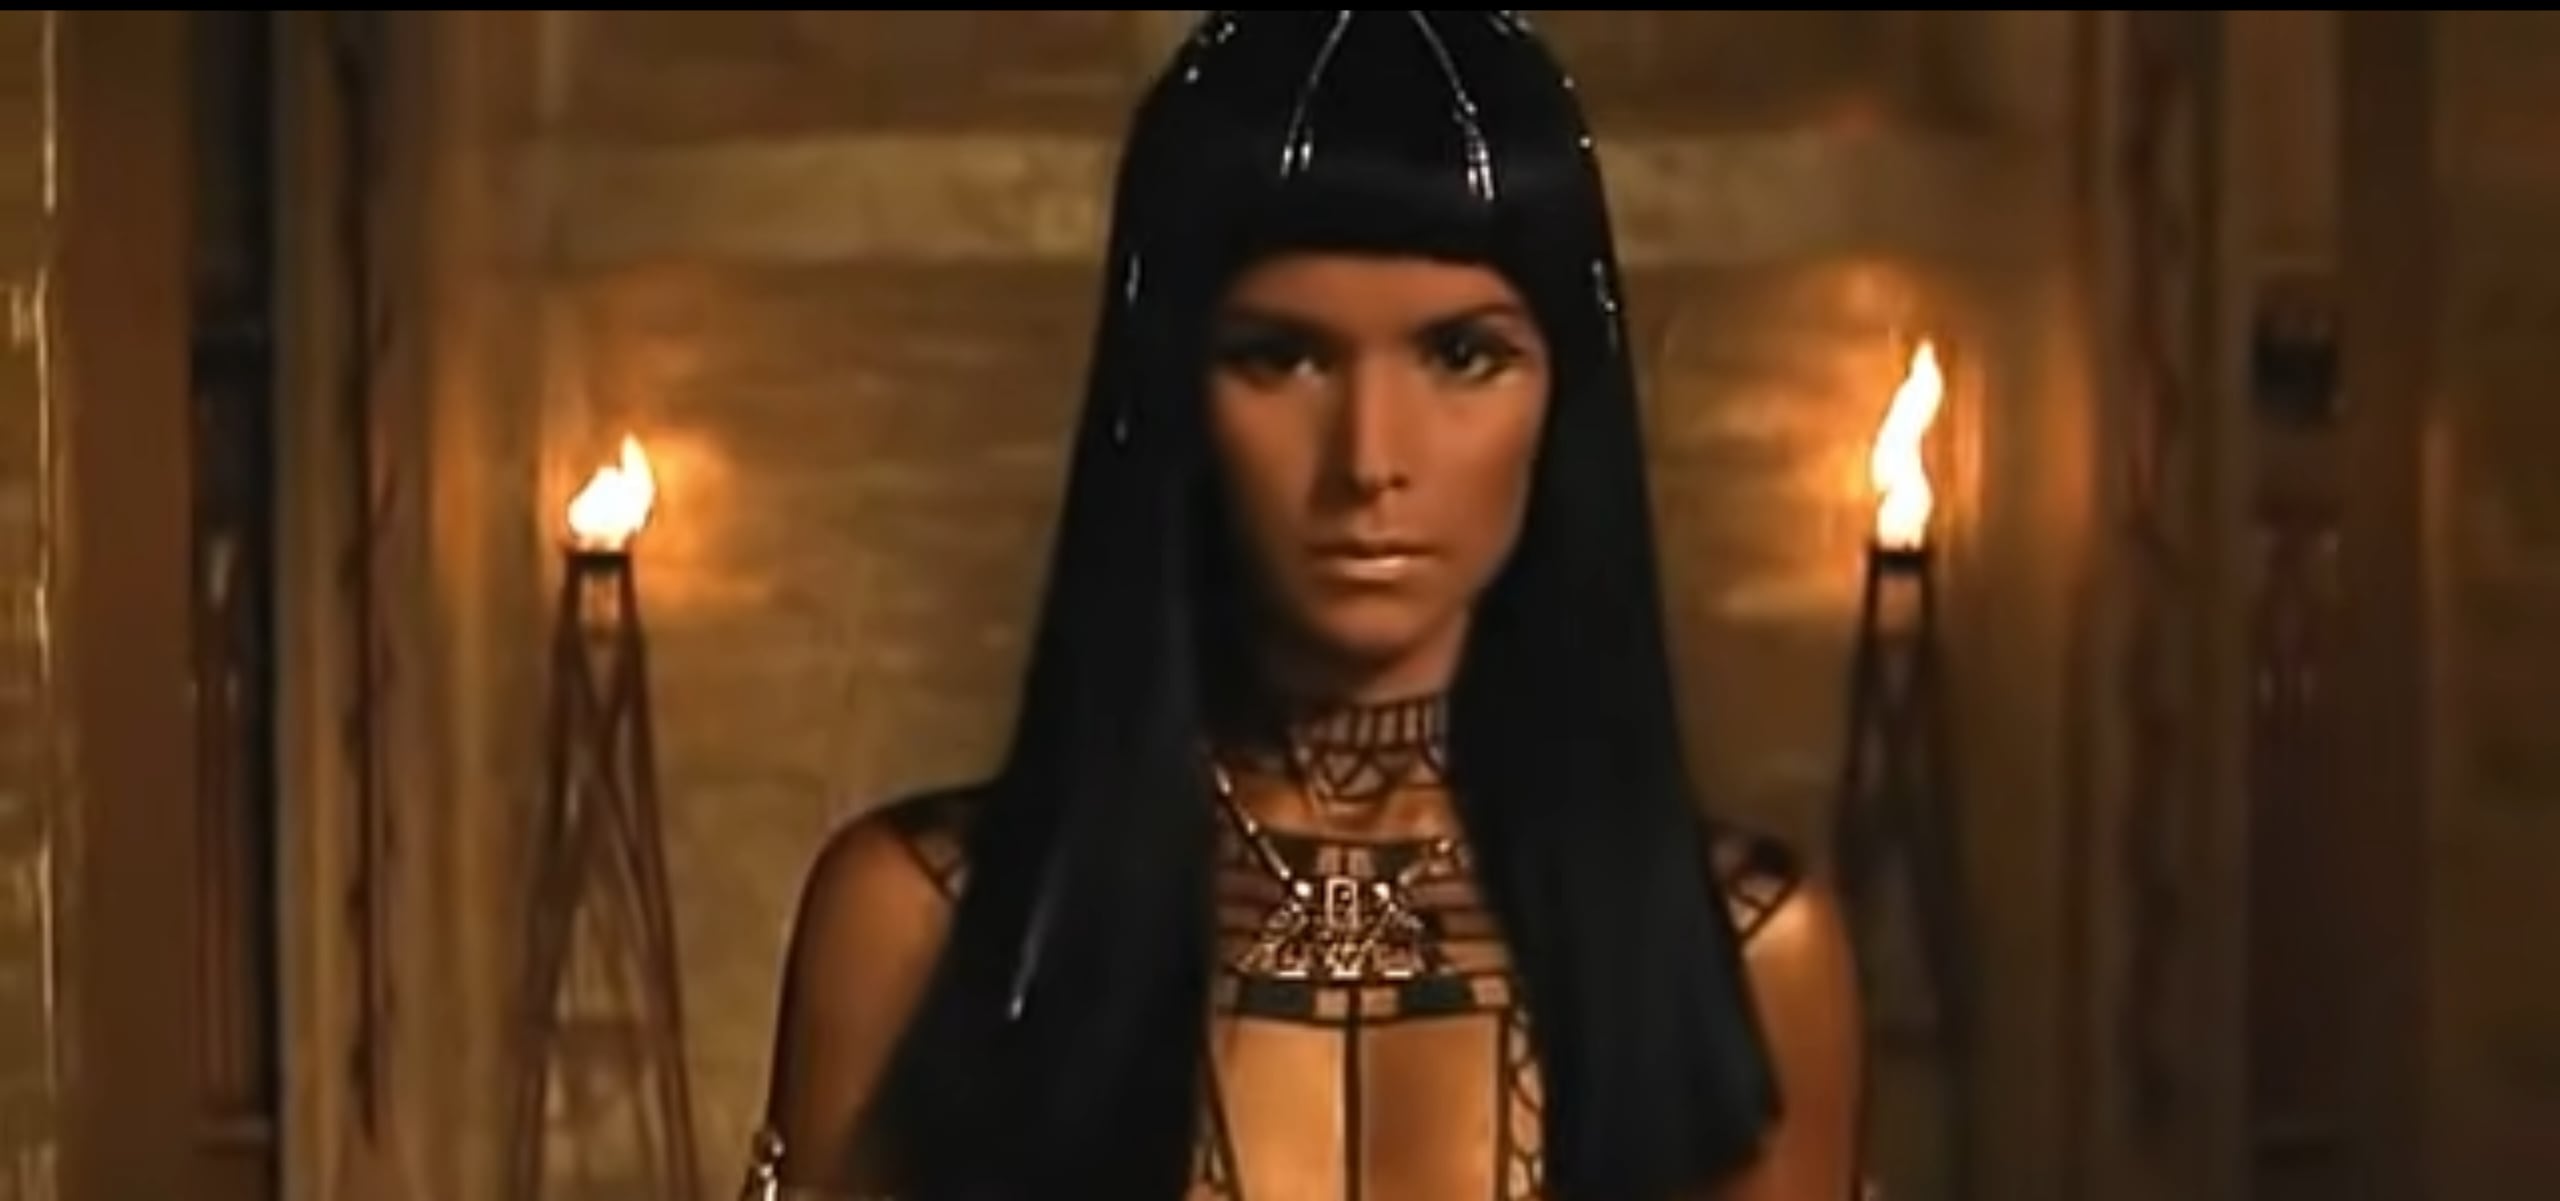 Patricia Velásquez, quien se destacó en la década de los 90 como modelo, destelló al interpretar a Anck-Su-Namun, tentación del villano Imhotep, en la película "The Mummy".